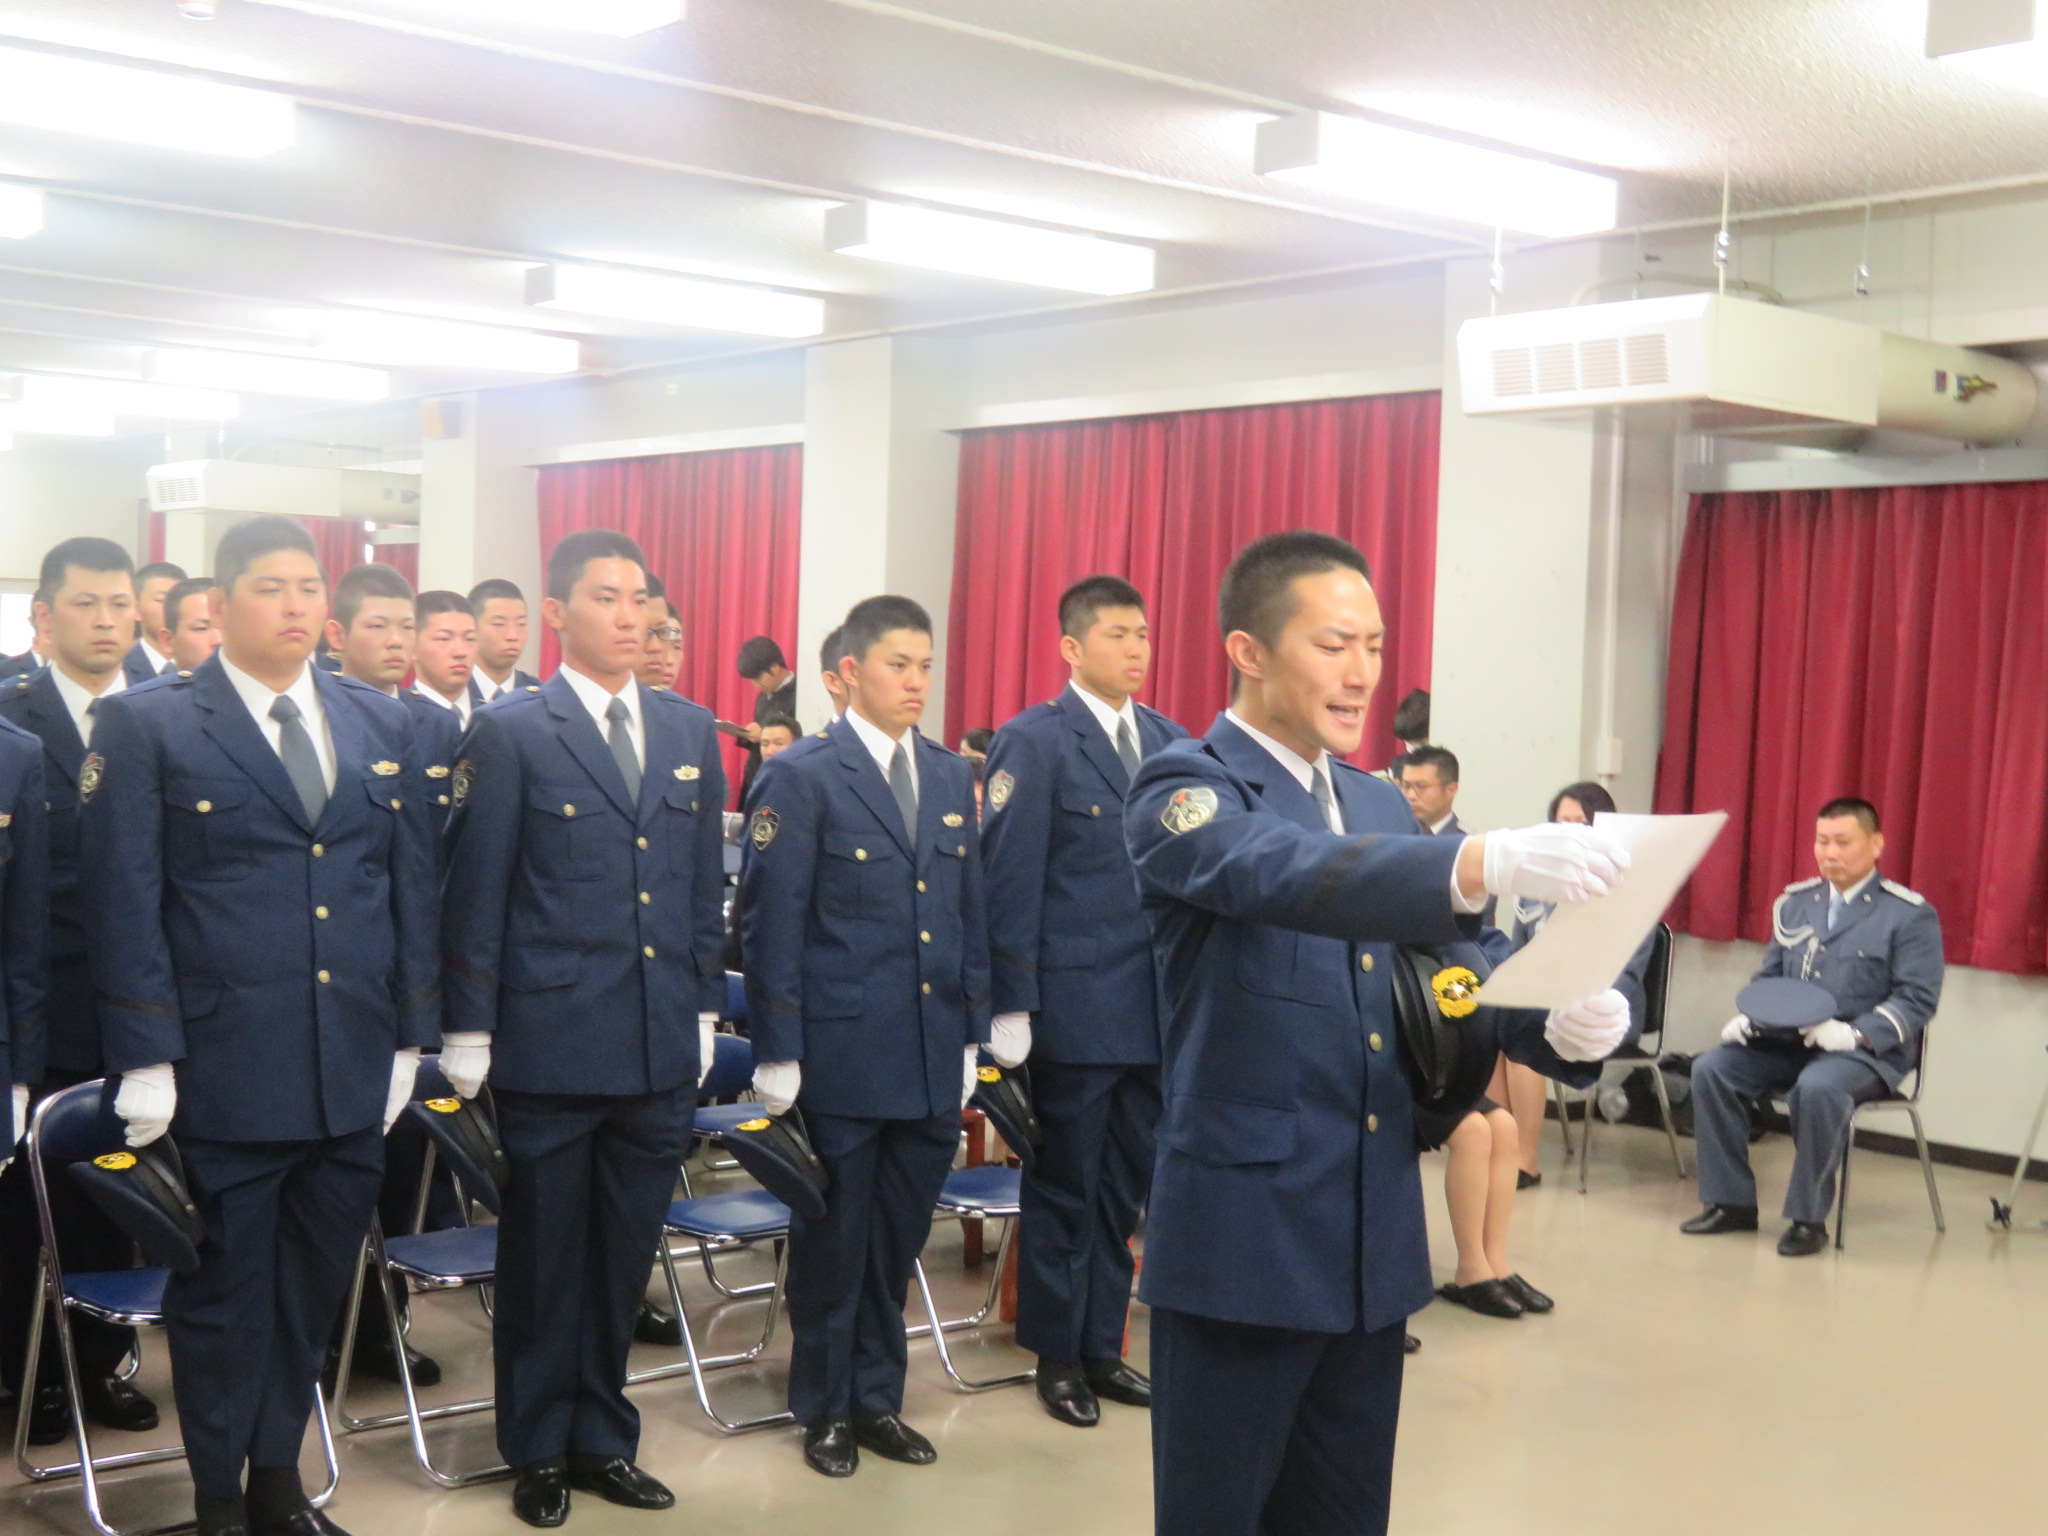 和歌山の警察 和歌山県警察学校 和歌山県警察ホームページ